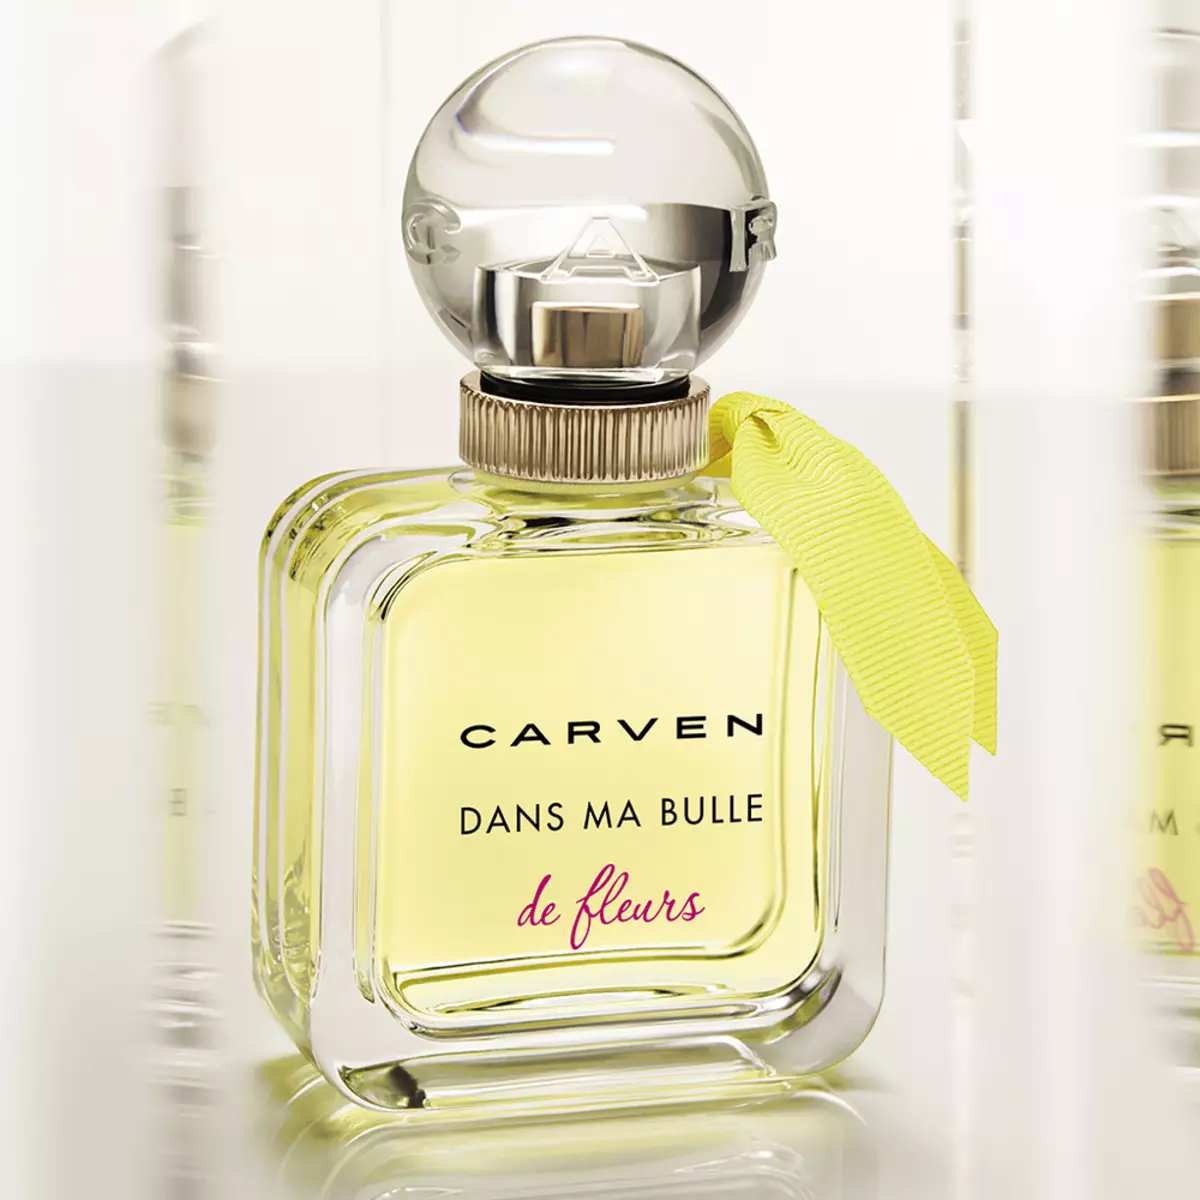 I-Perfume Carven: Amakha Abesifazane I-LE PARFUM, L'AU DEAIRETETE NE-DANS MA Bule, Amakha amakha amakha amakhabe 25267_9